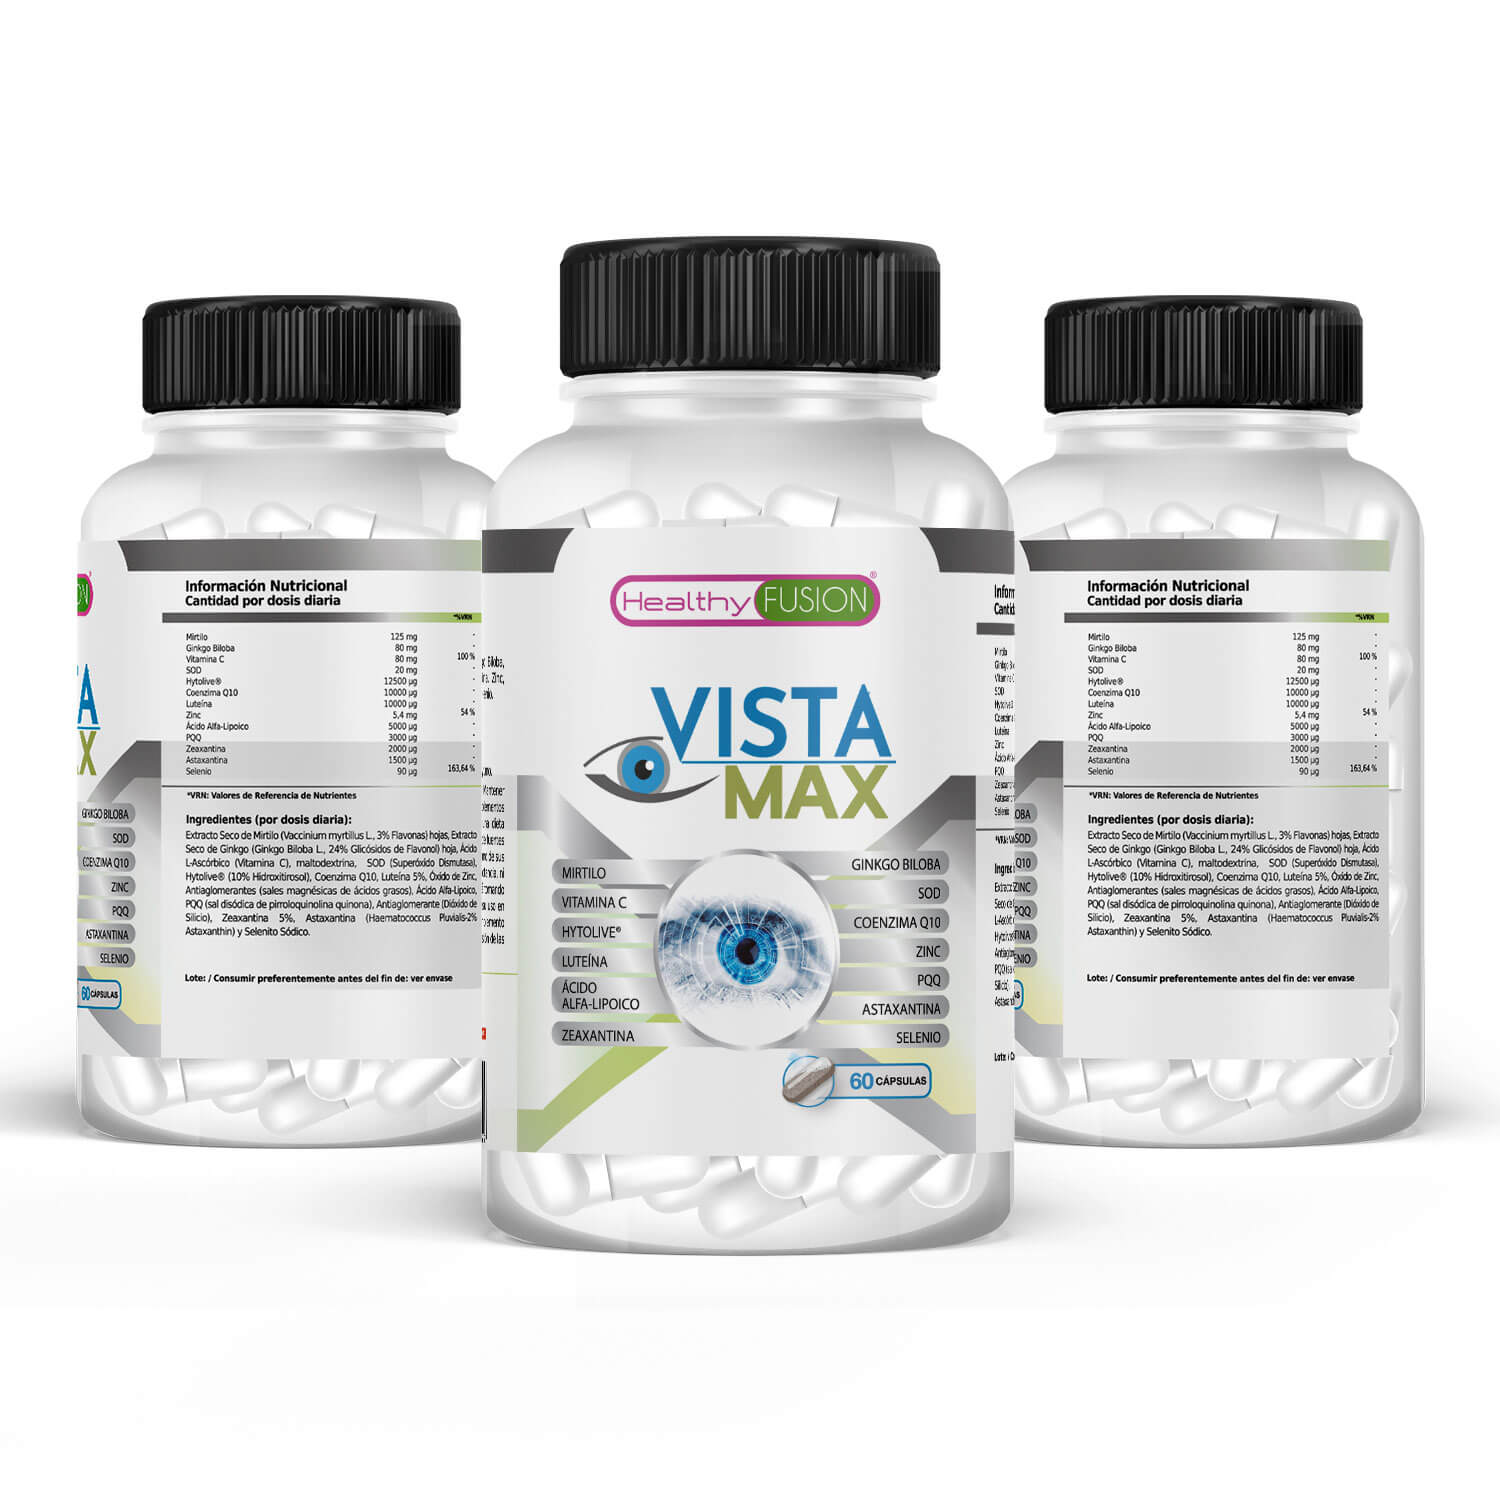 Healthy Fusion - Vistamax contenido